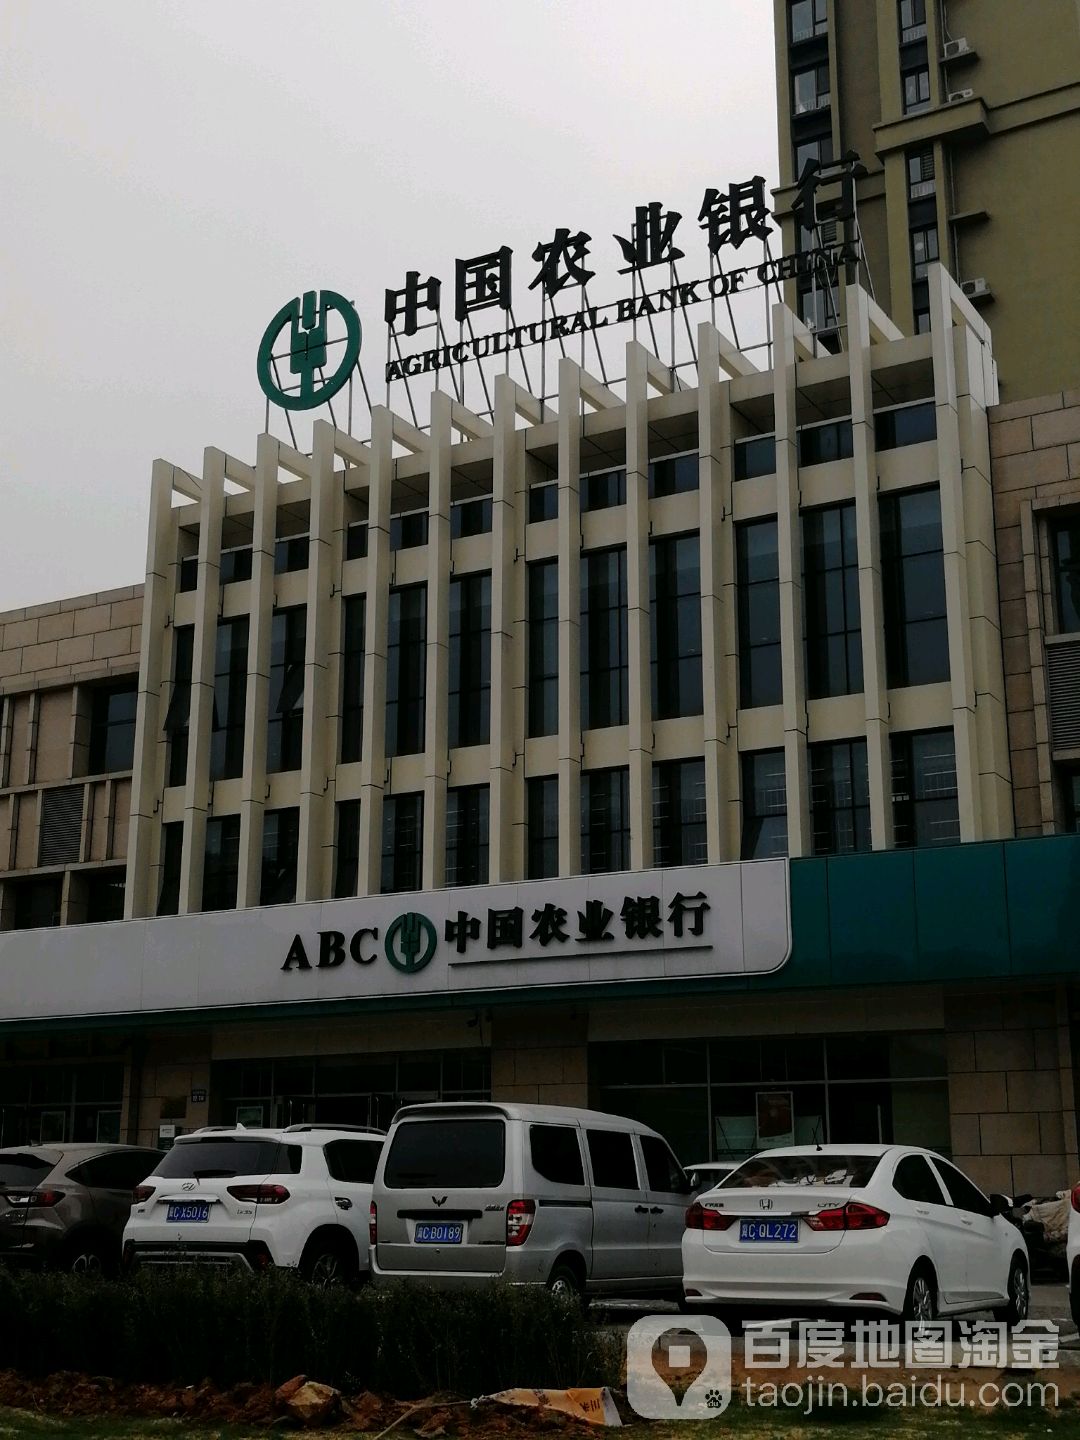 中國農業銀行(秦皇島長城支行)